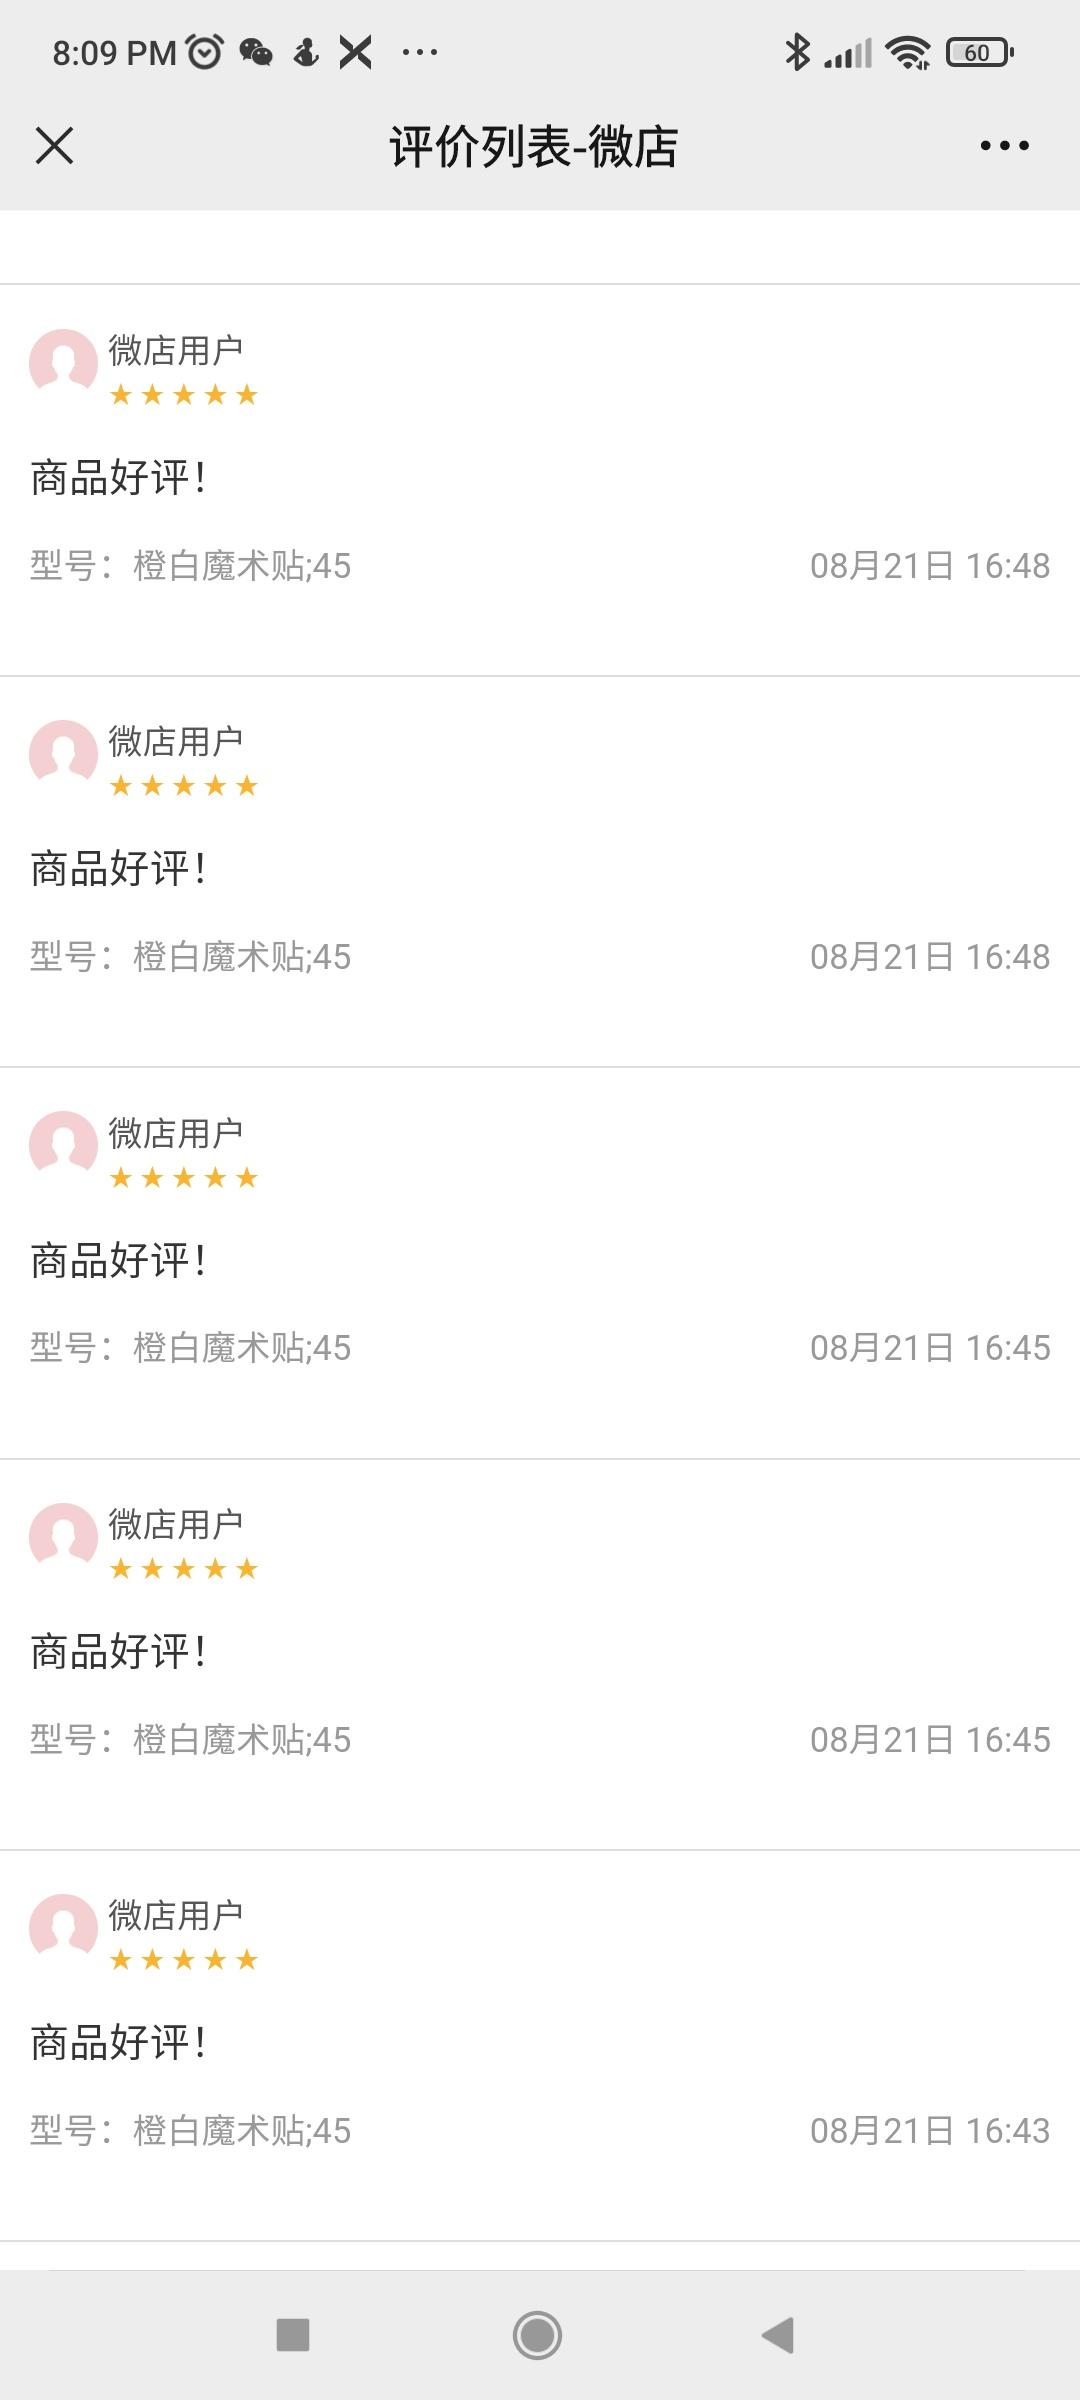 Weidian review screenshot